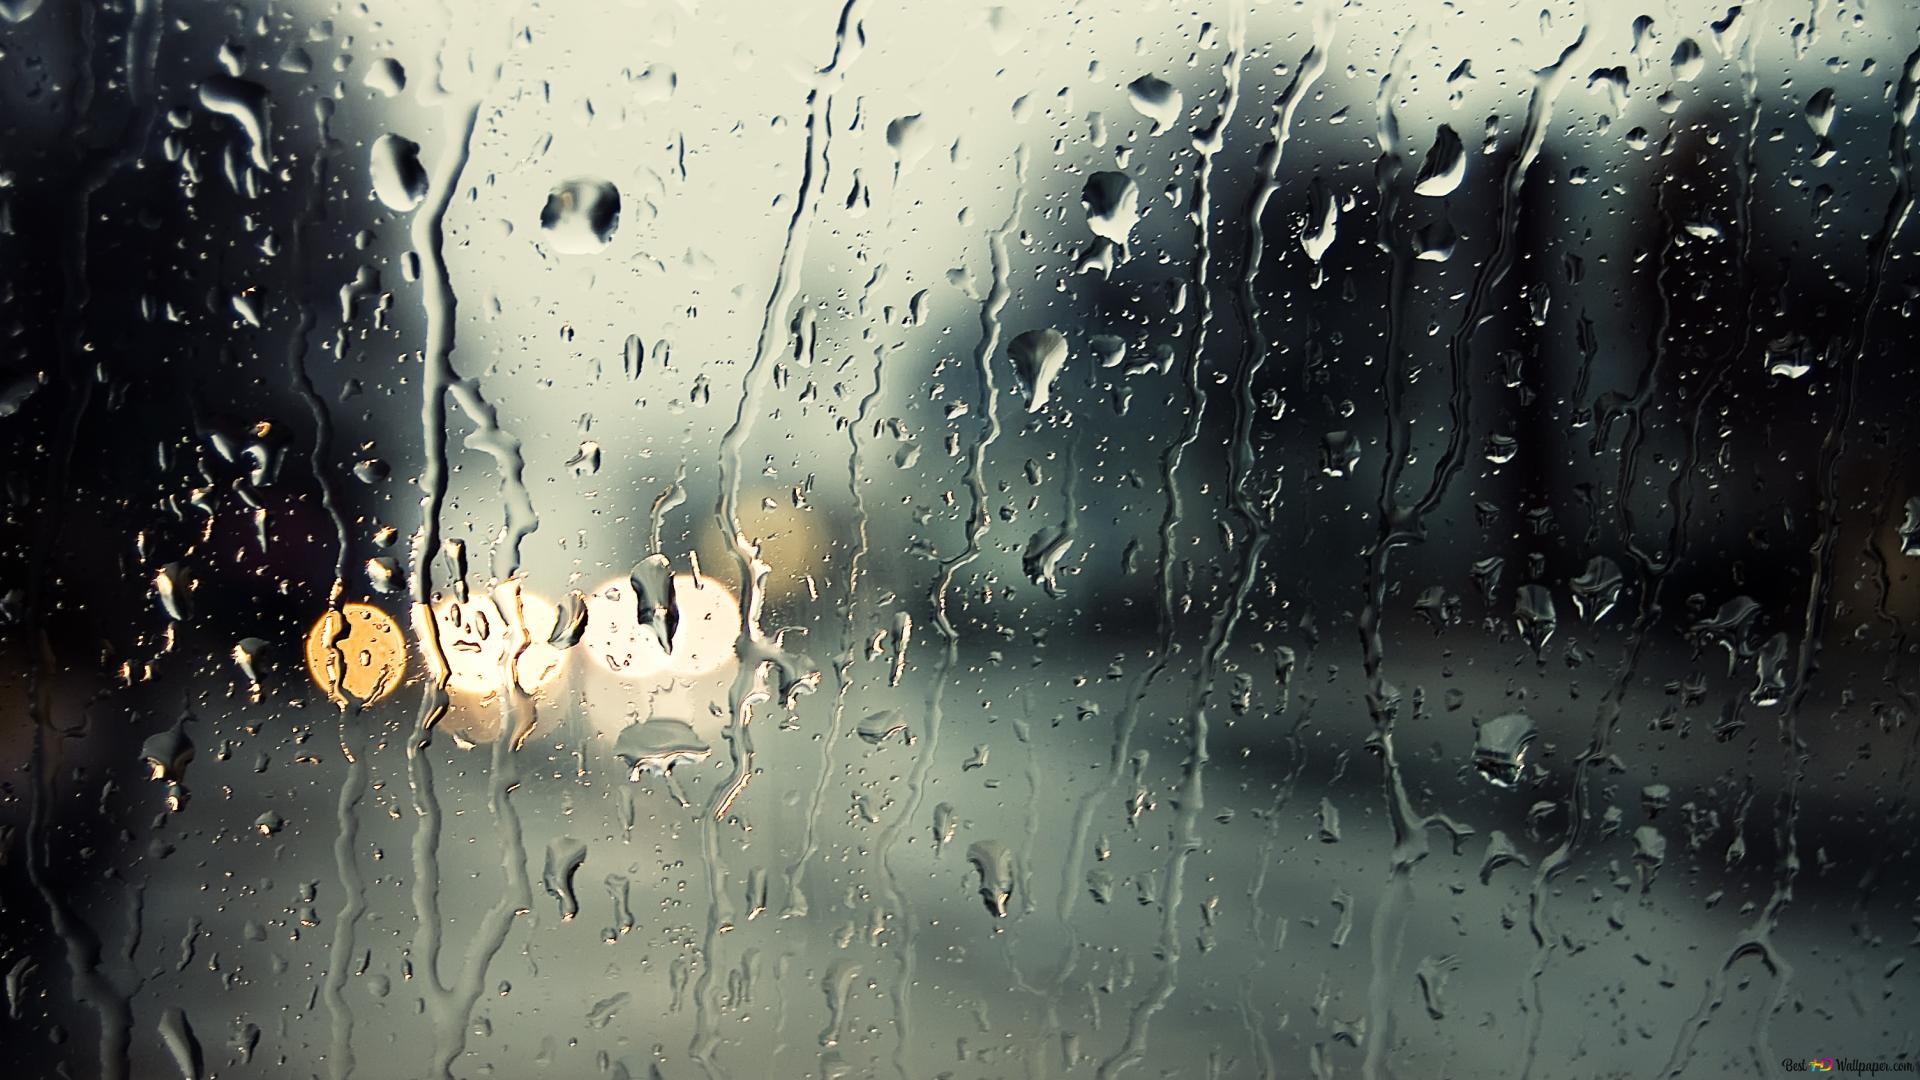 عکس معروف شیشه بارانی با زمینه نور و طبیعت برای Instagram